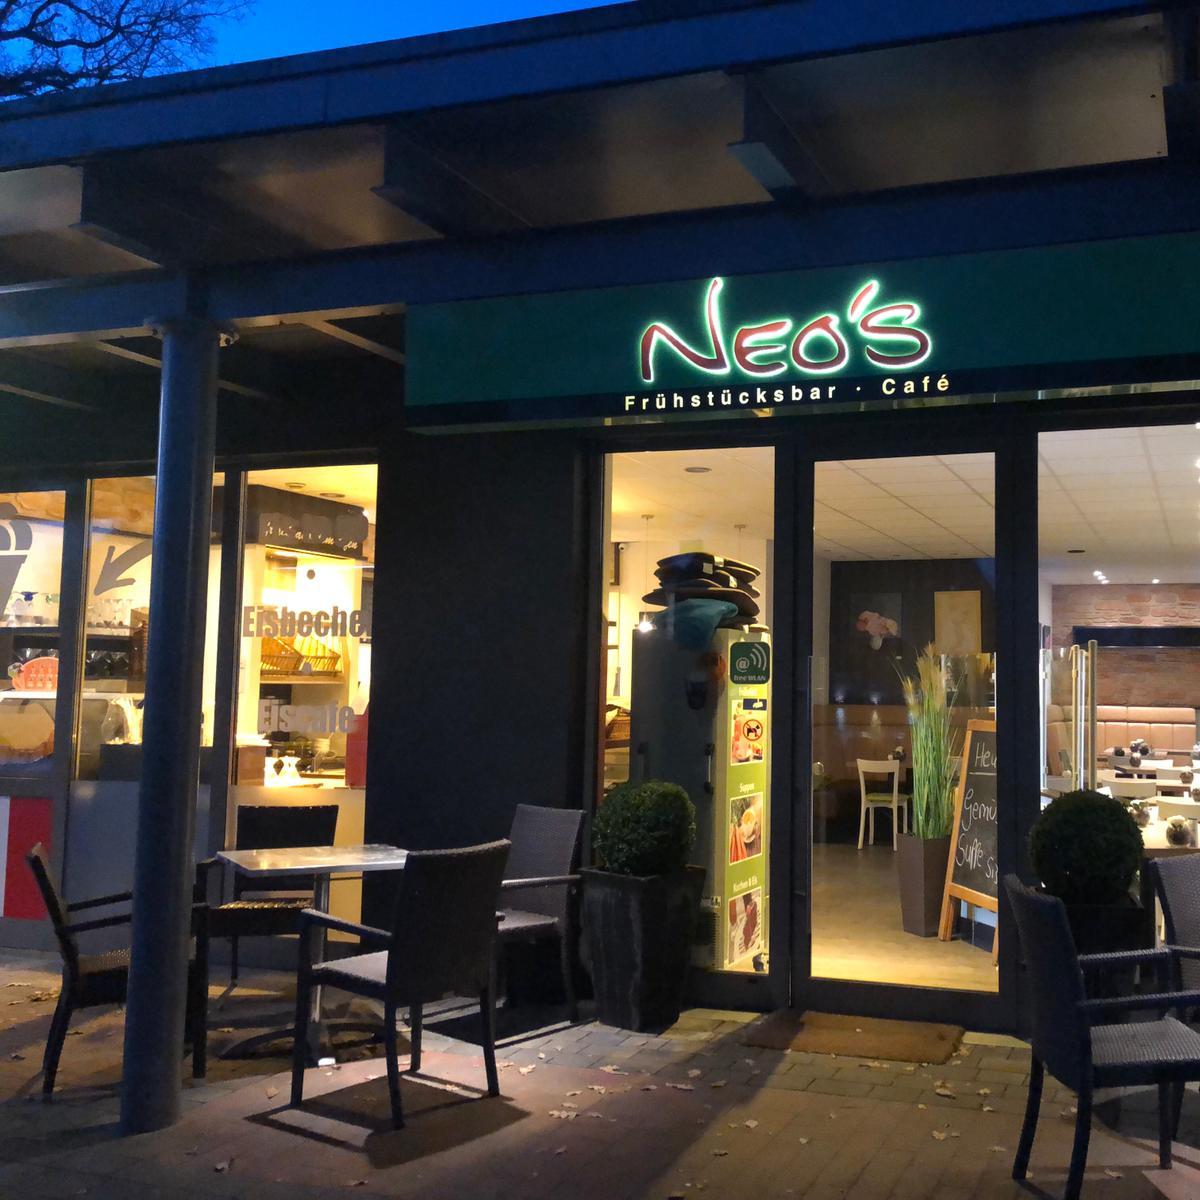 Restaurant "Neos Frühstücksbar Café" in Worpswede